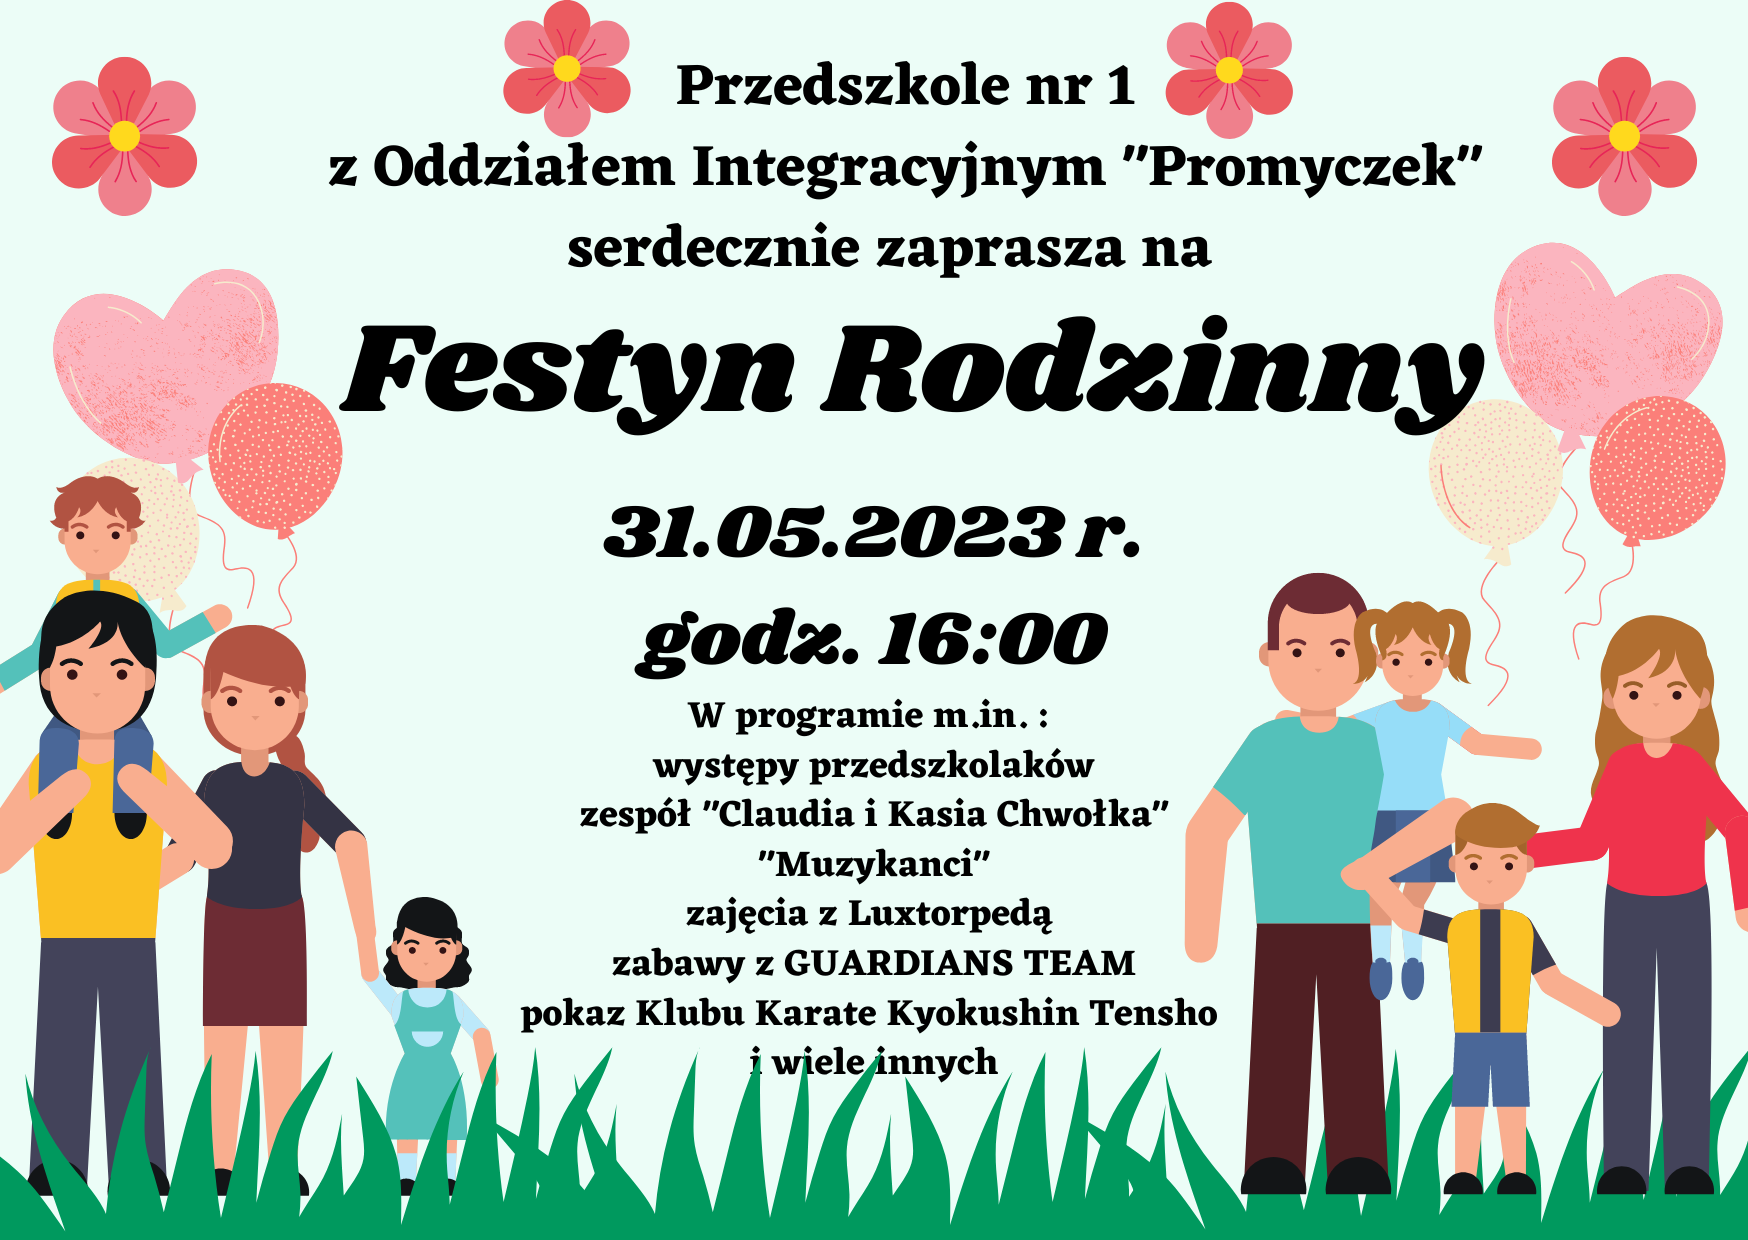 plakat festynu rodzinnego organizowanego przez przedszkole nr 1 "Promyczek"